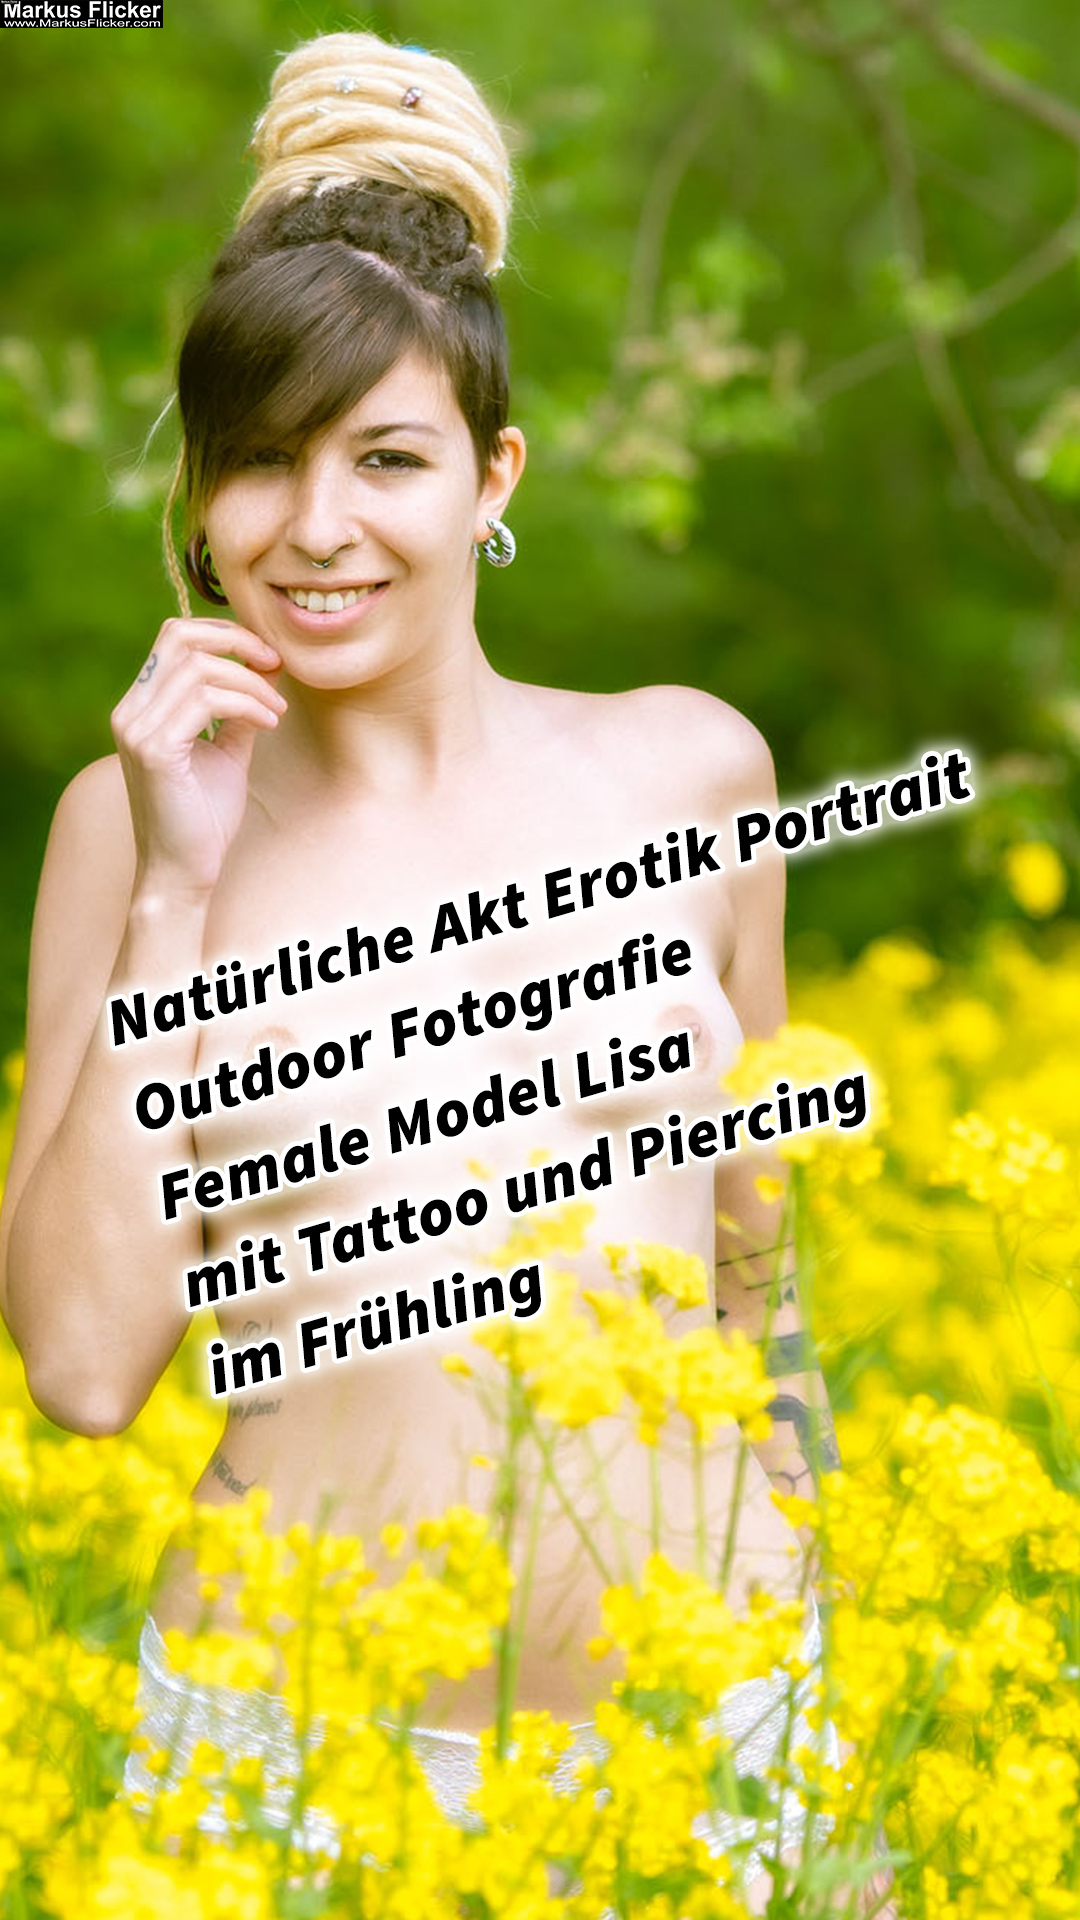 Natürliche Akt Erotik Portrait Outdoor Fotografie Female Model Lisa mit Tattoo und Piercing im Frühling